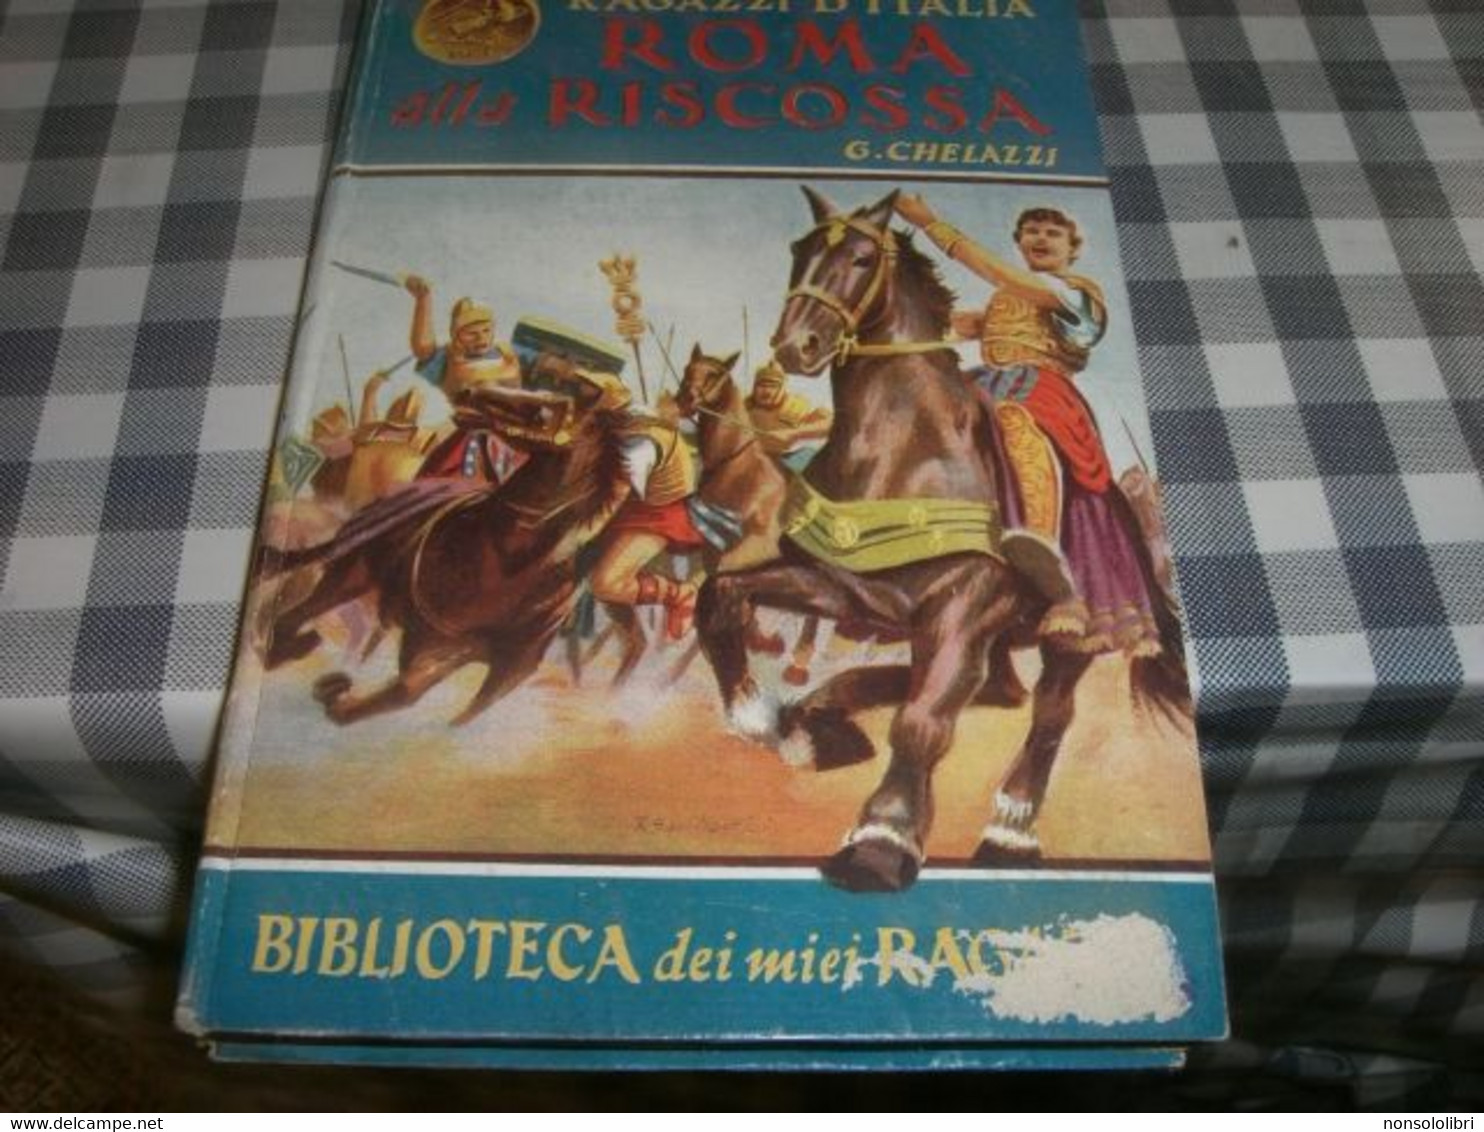 LIBRO "RAGAZZI D'ITALIA ROMA ALLA RISCOSSA -BIBLIOTECA DEI MIEI RAGAZZI N.93 EDIZIONE SALANI - Bambini E Ragazzi